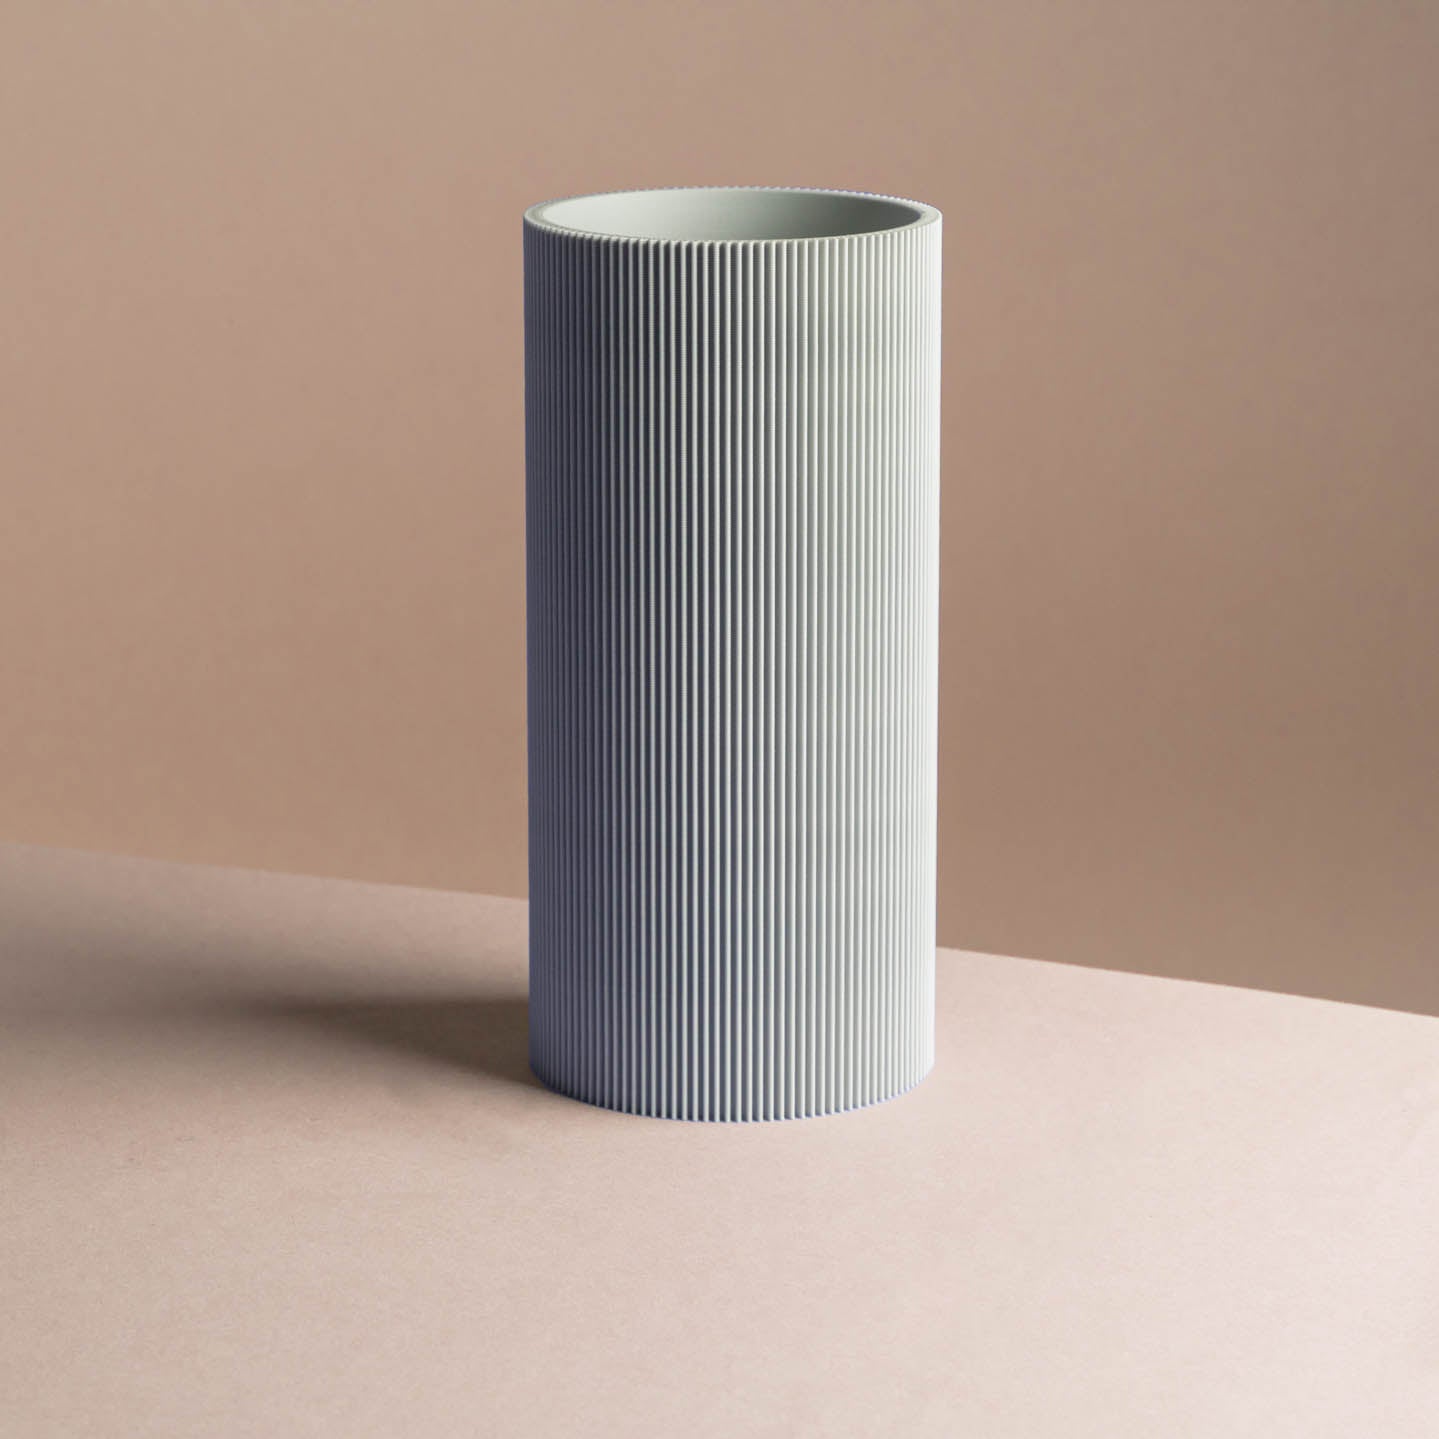 3D-Druck Vase 'Gerade' in klassischen Farben